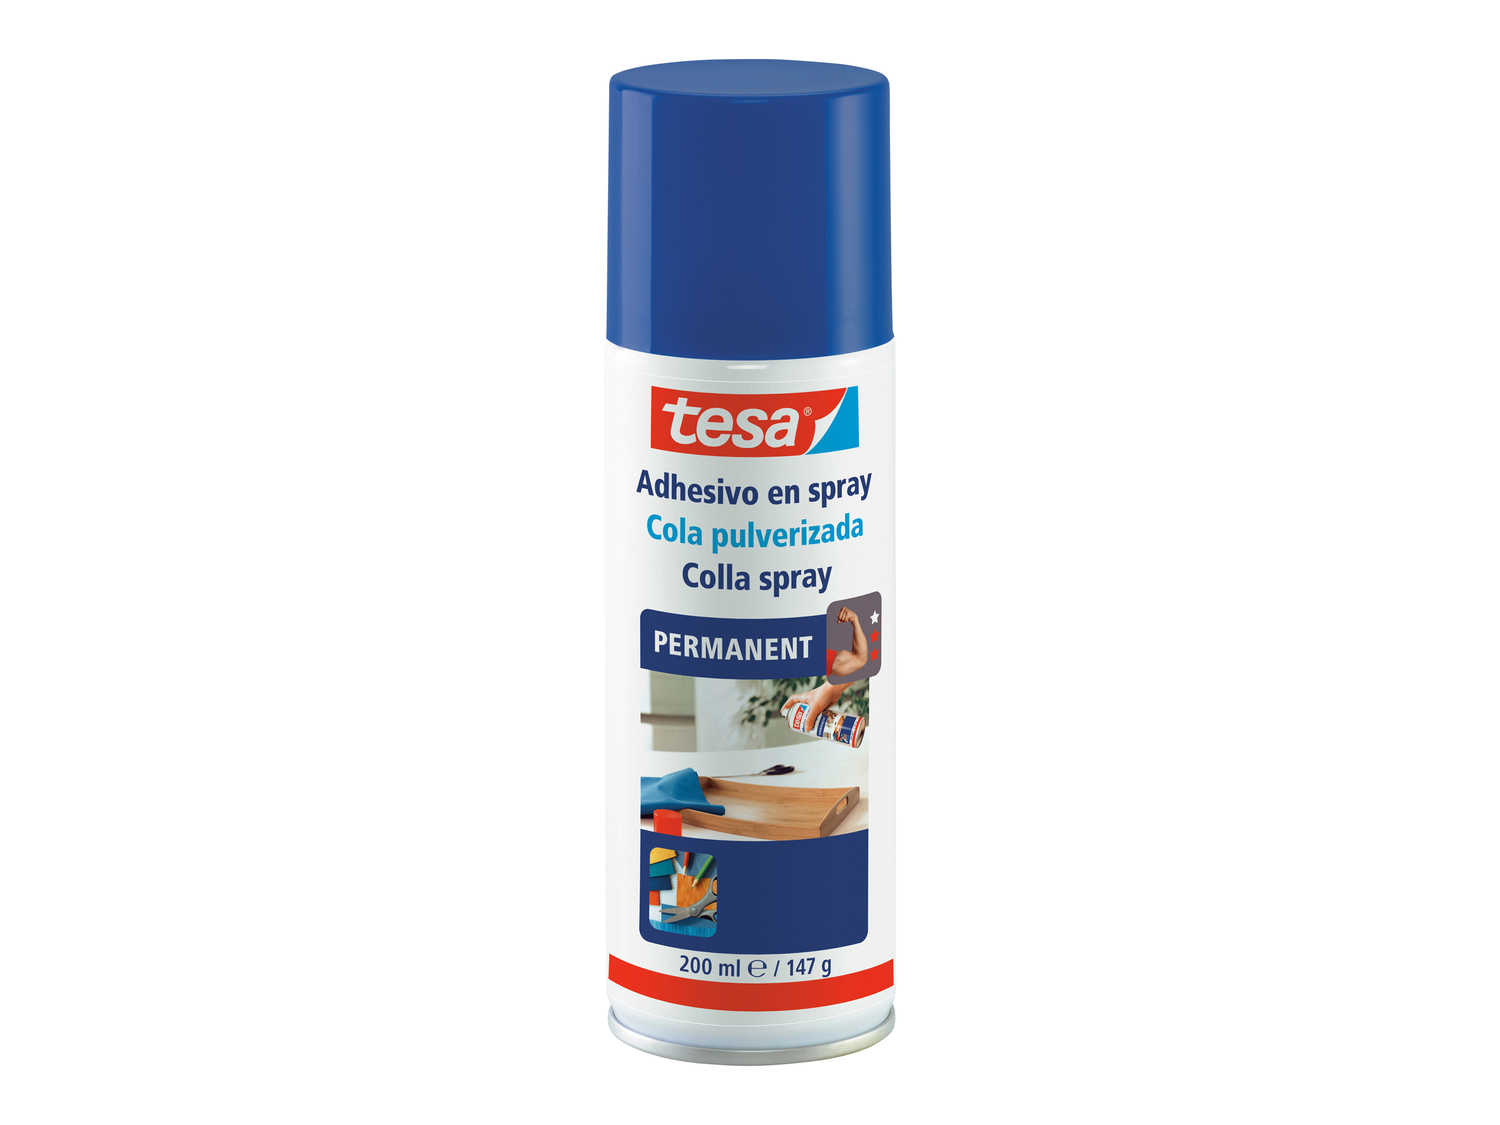 Colla spray o spray rimuovi colla Tesa, prezzo 4.99 &#8364;  
200 ml
Caratteristiche